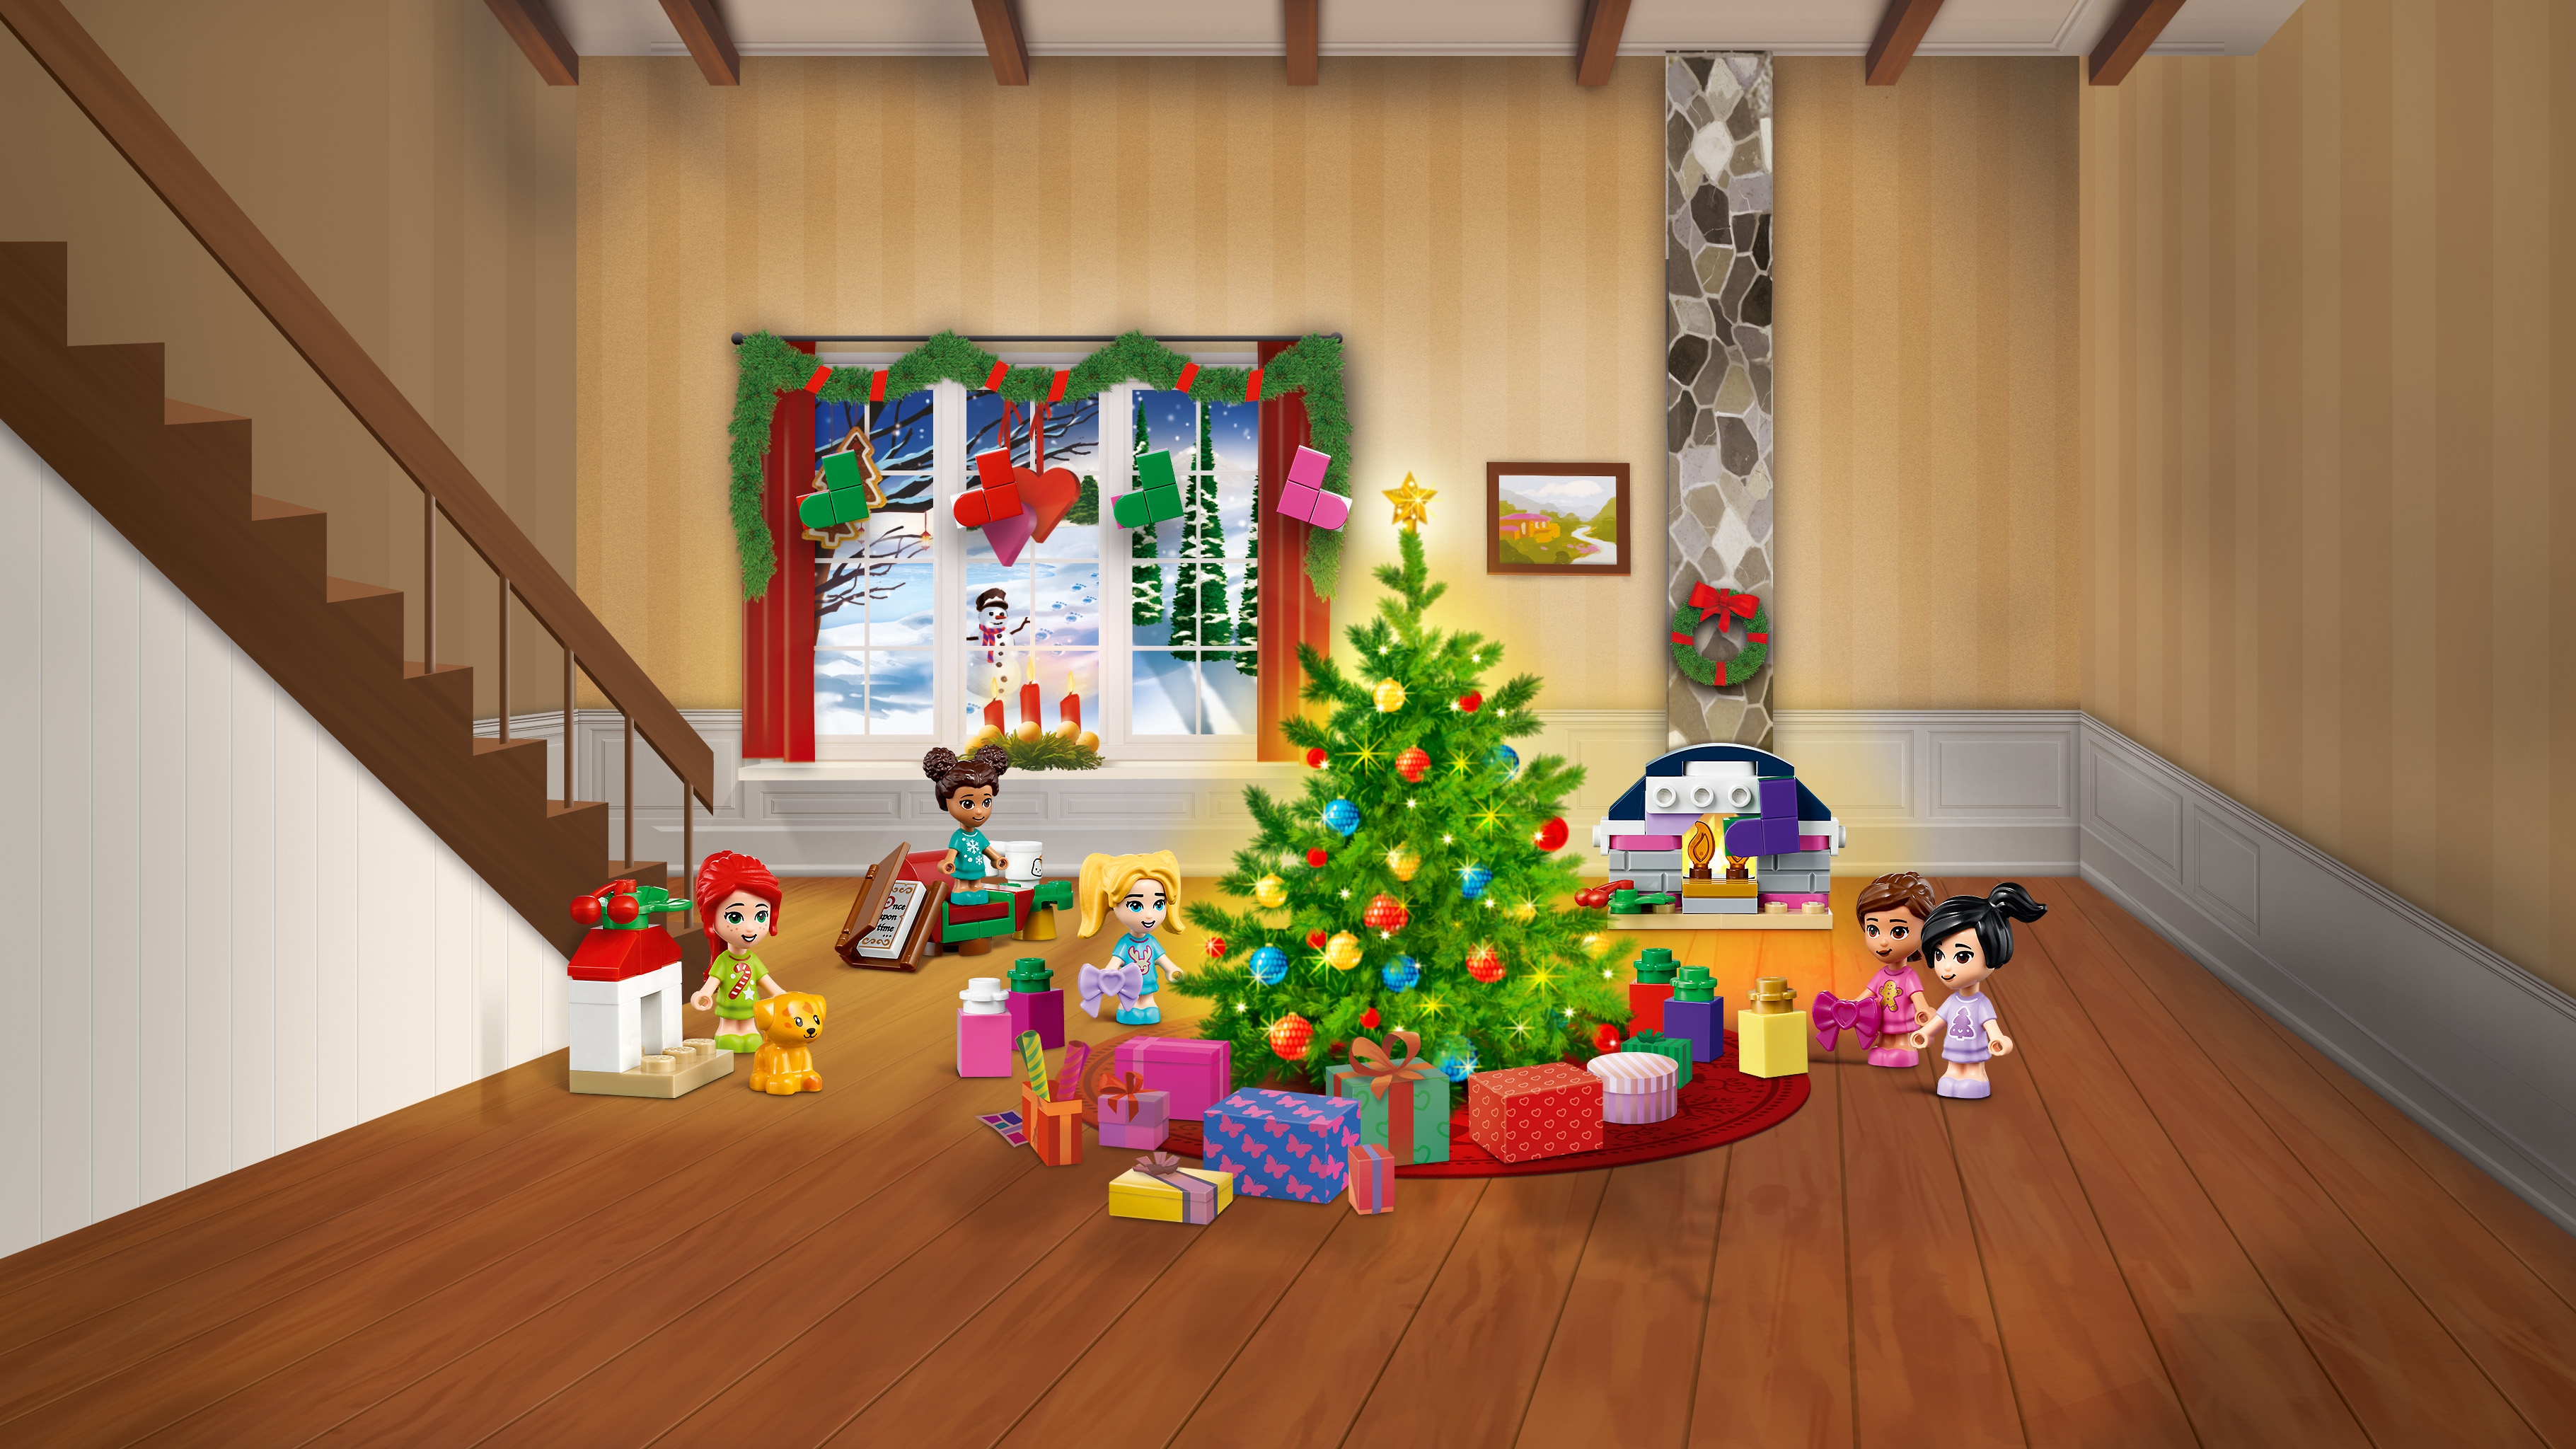 Lego Christmas Tree Advent Calendar - A Few Small Adventures